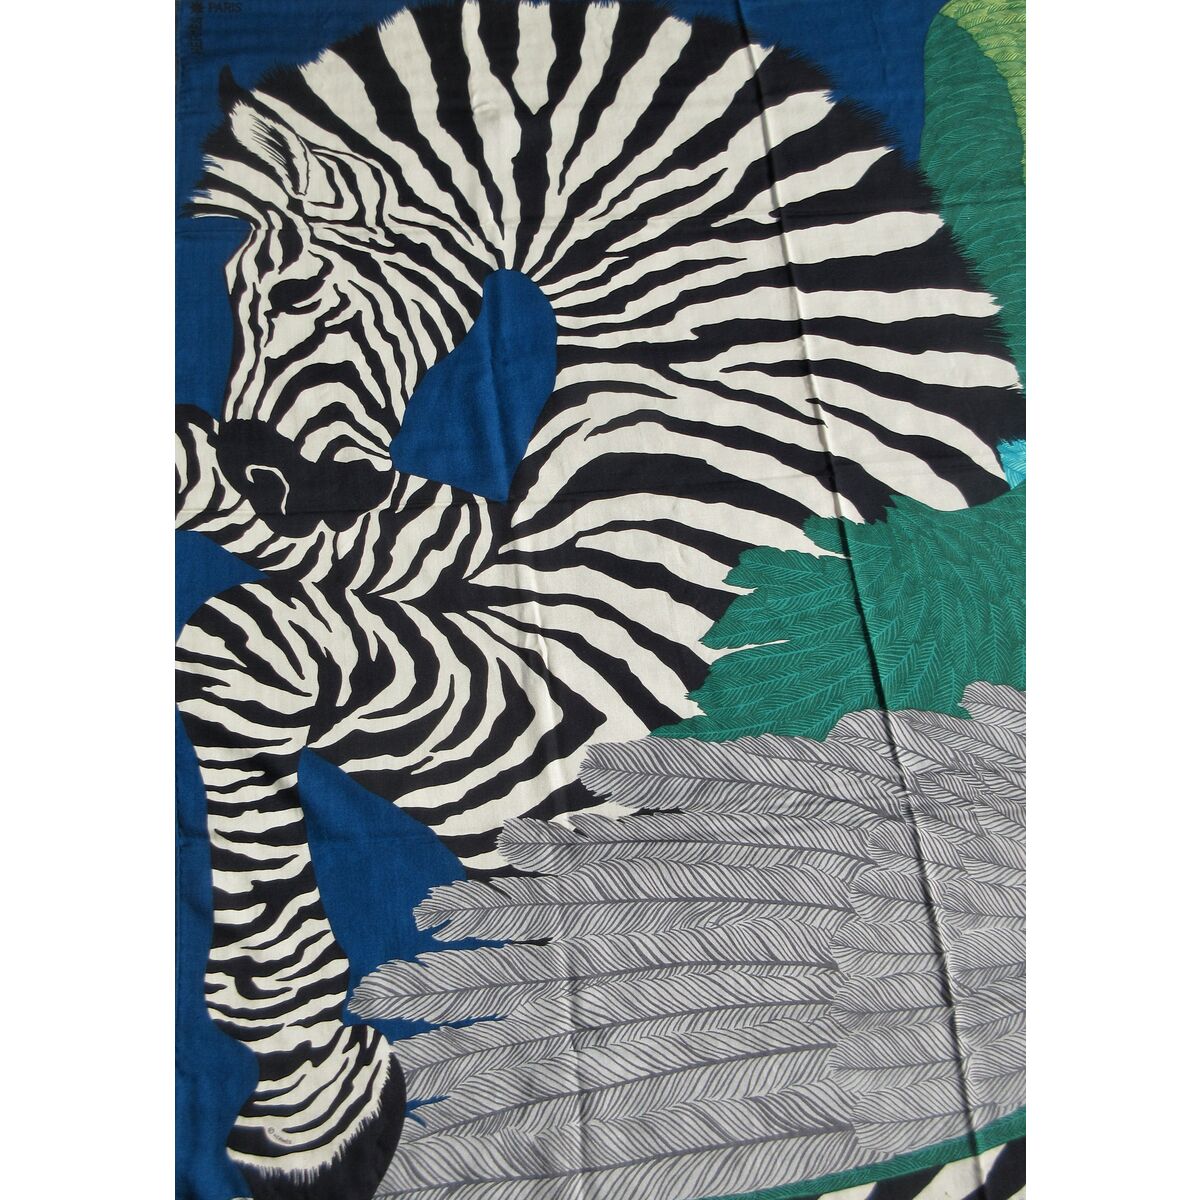 Hermes 2014 Zebra Pegasus Cashmere Shawl